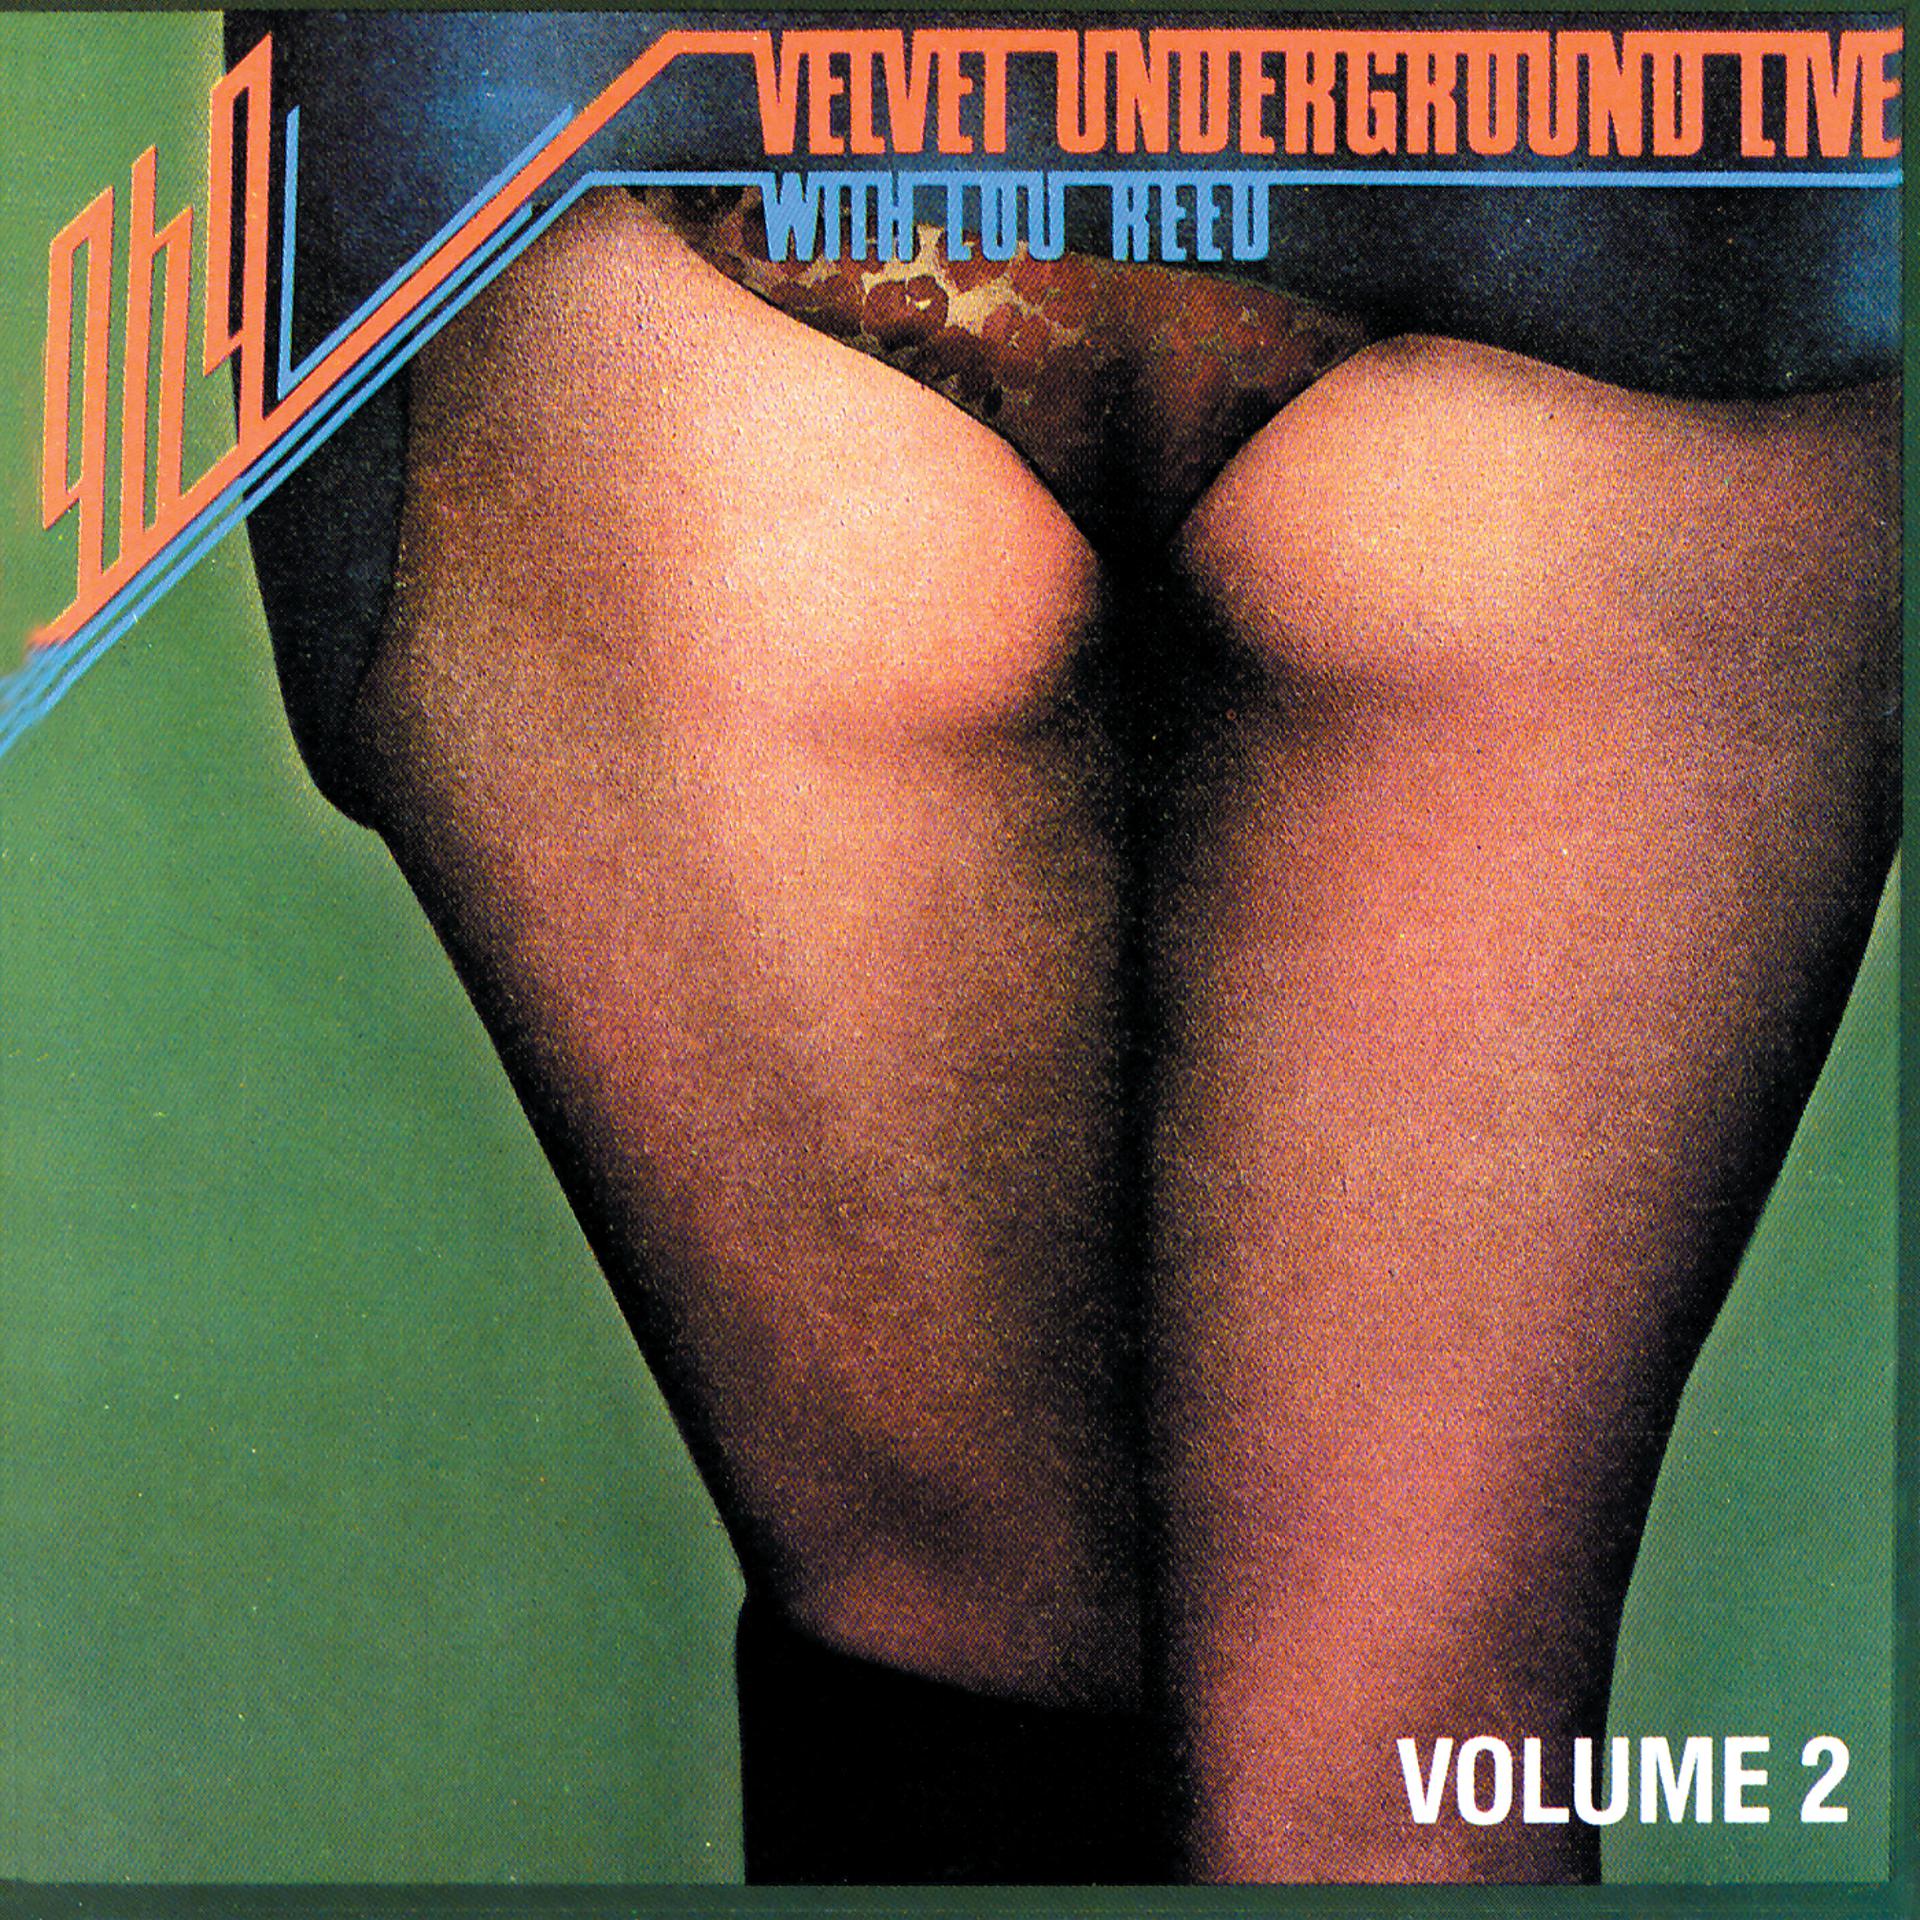 Постер альбома 1969: Velvet Underground Live with Lou Reed Vol. 2